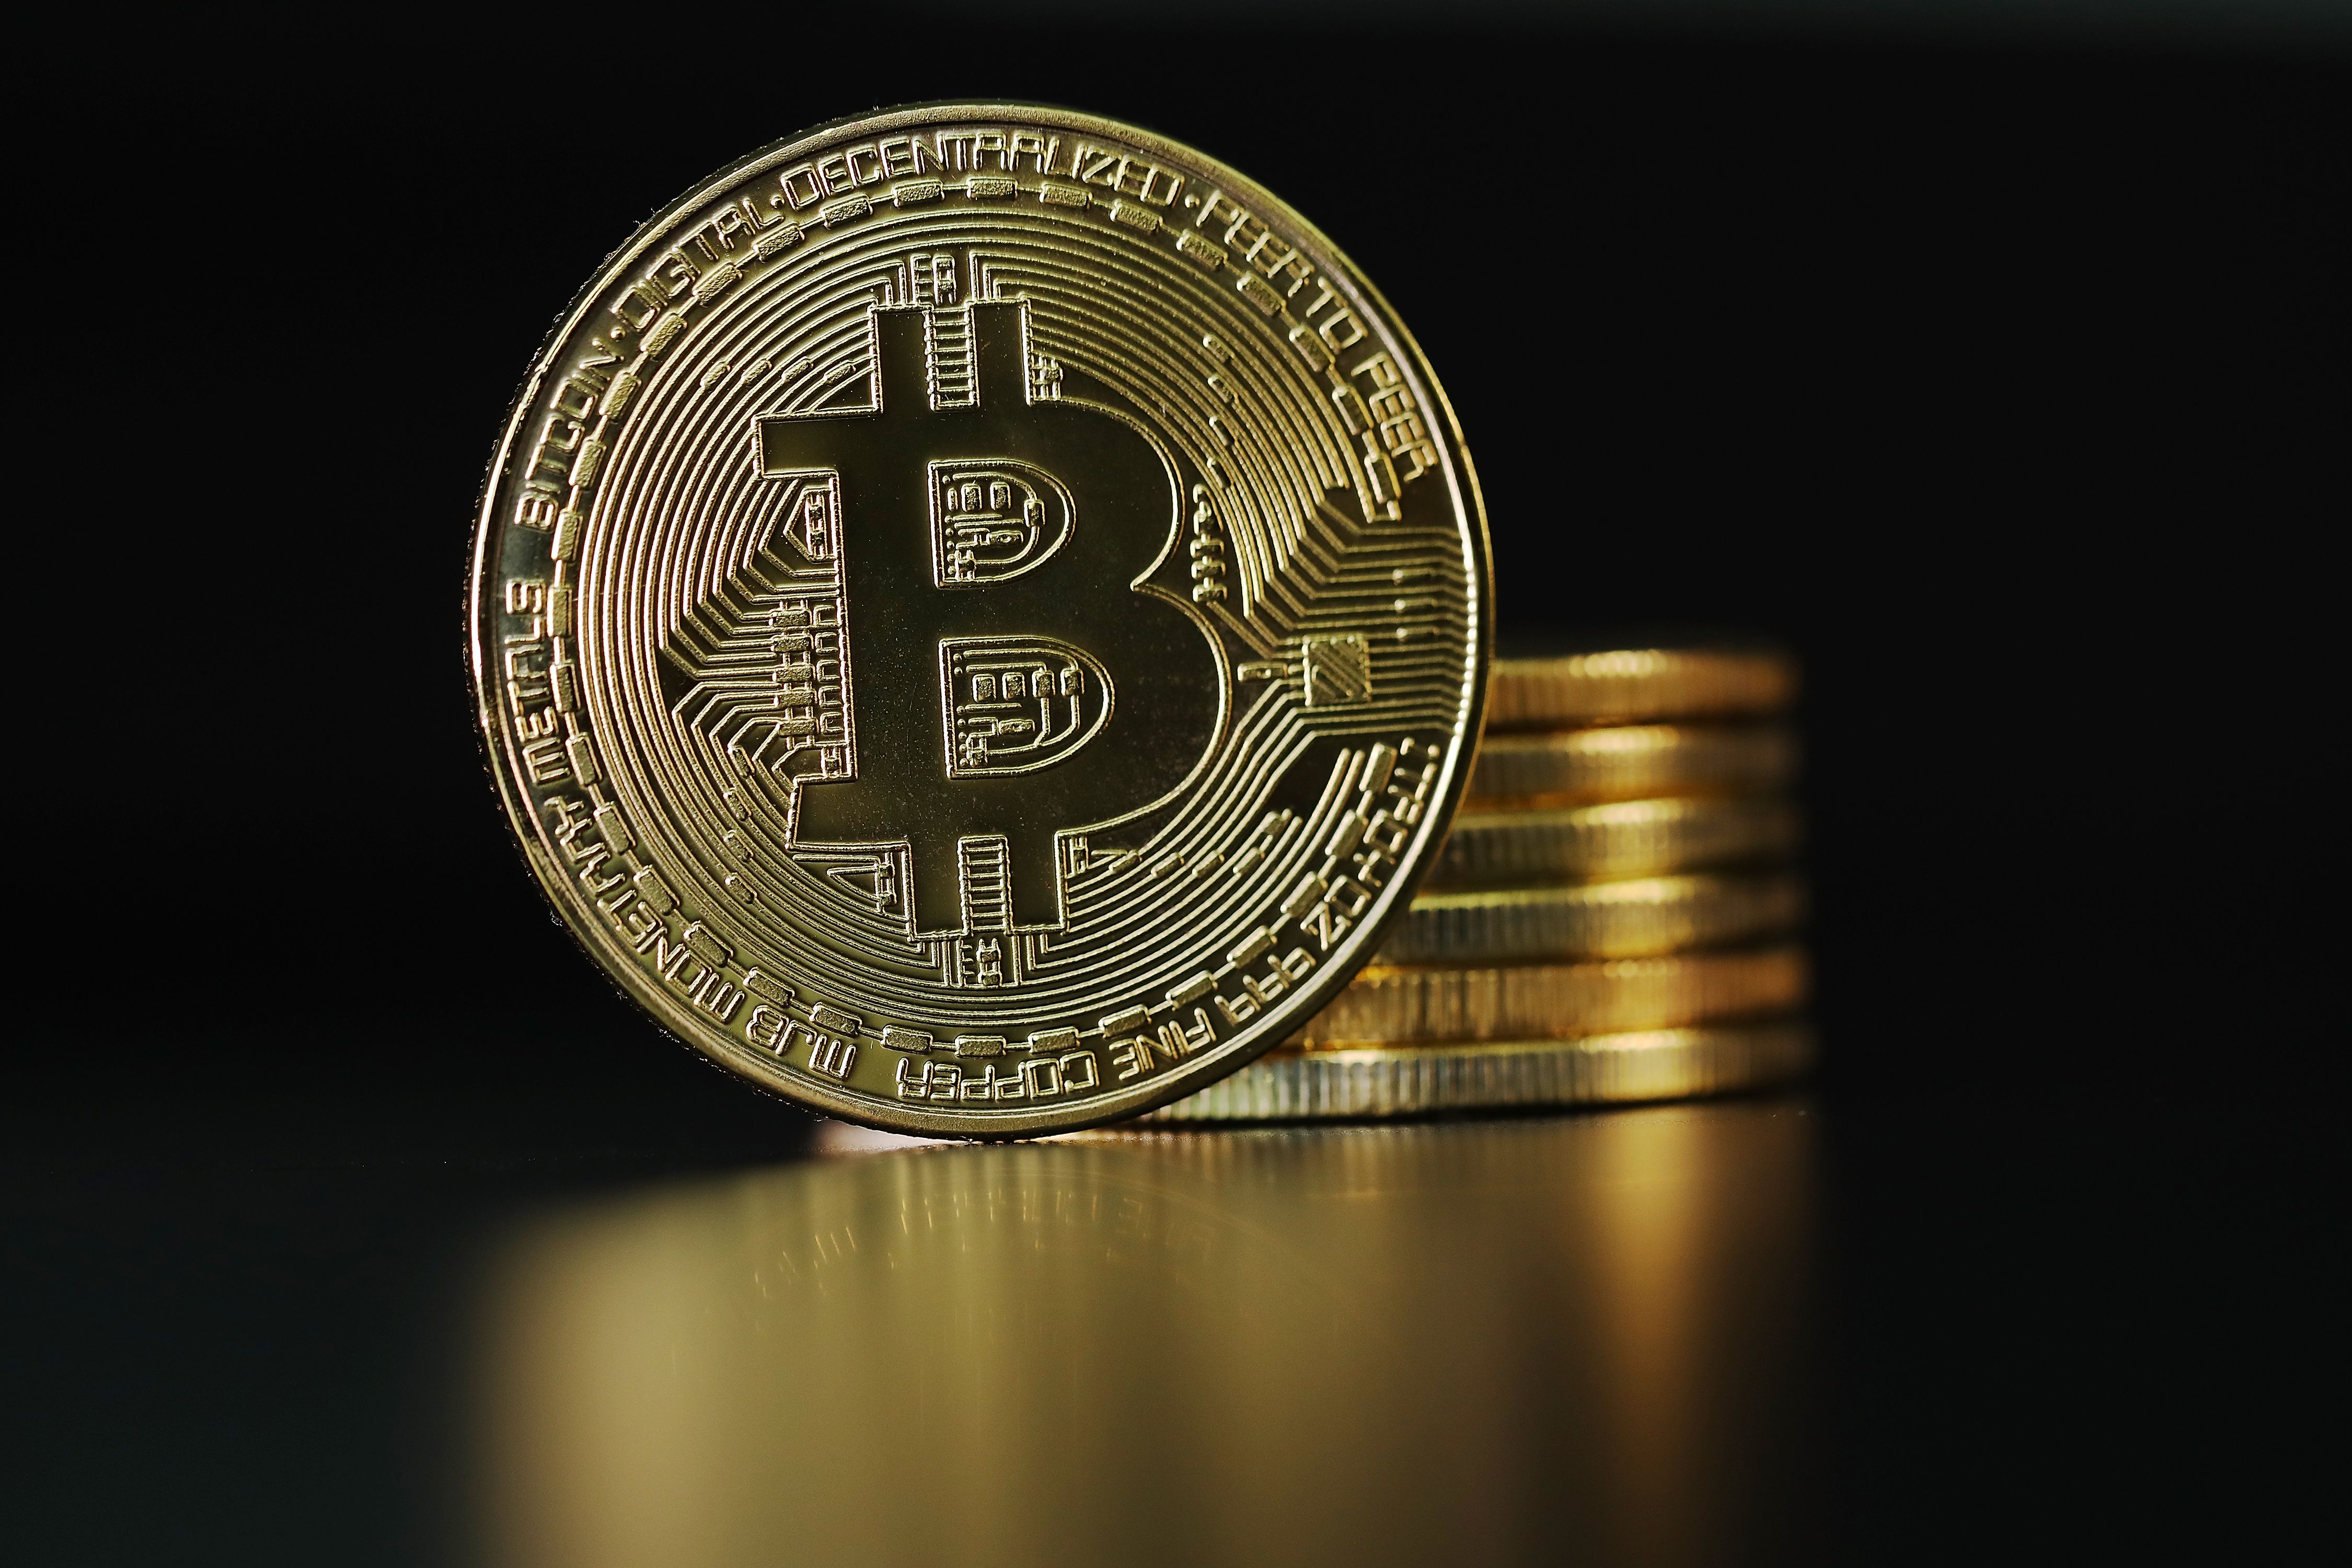 An image of the Bitcoin logo.